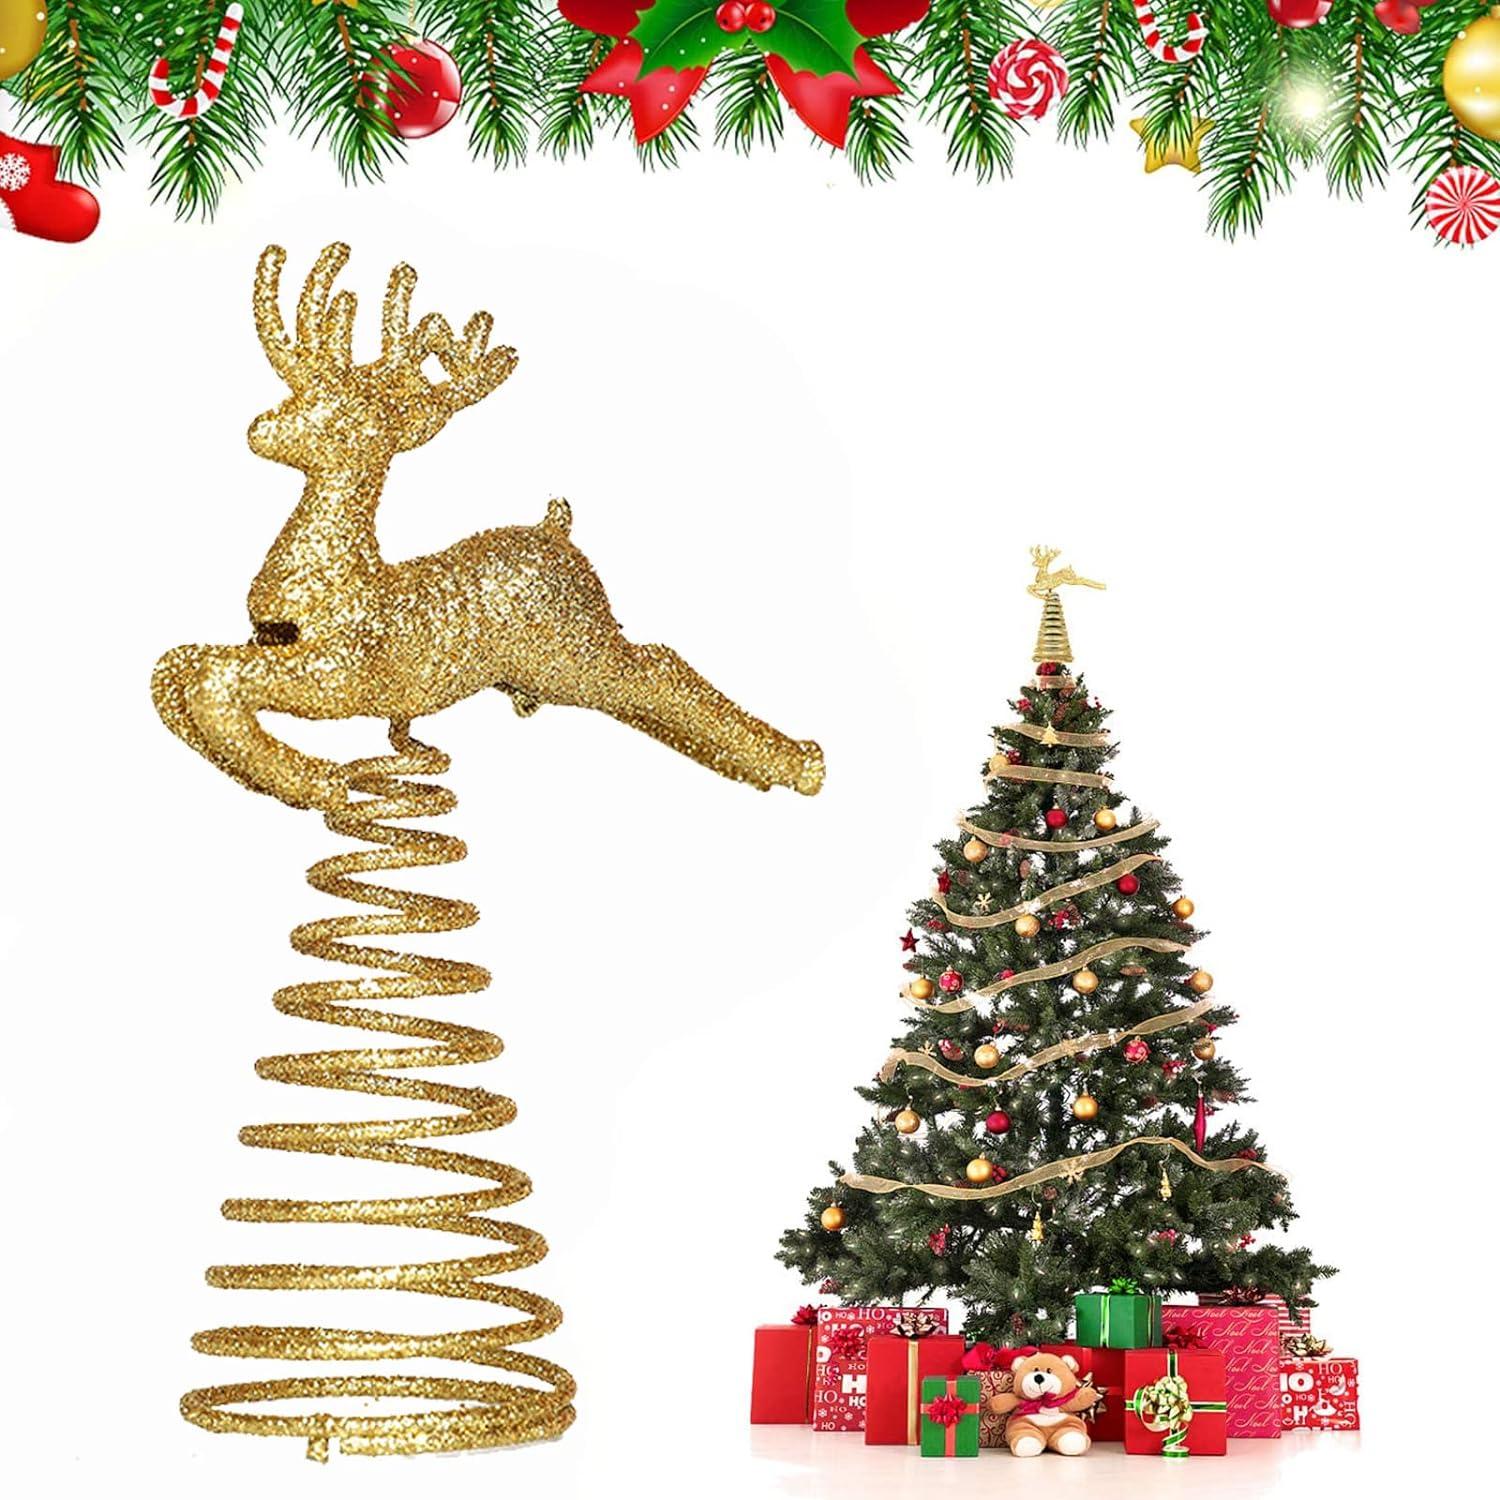 Đồ trang trí cây thông Noel Thắp sáng Đồ trang trí cây thông Noel (Vàng) Đồ trang trí cây thông Noel Cây ngôi sao có thể tái sử dụng Đồ trang trí cây thông Noel Đồ trang trí cây thông Noel bằng vàng (Noel Elk)